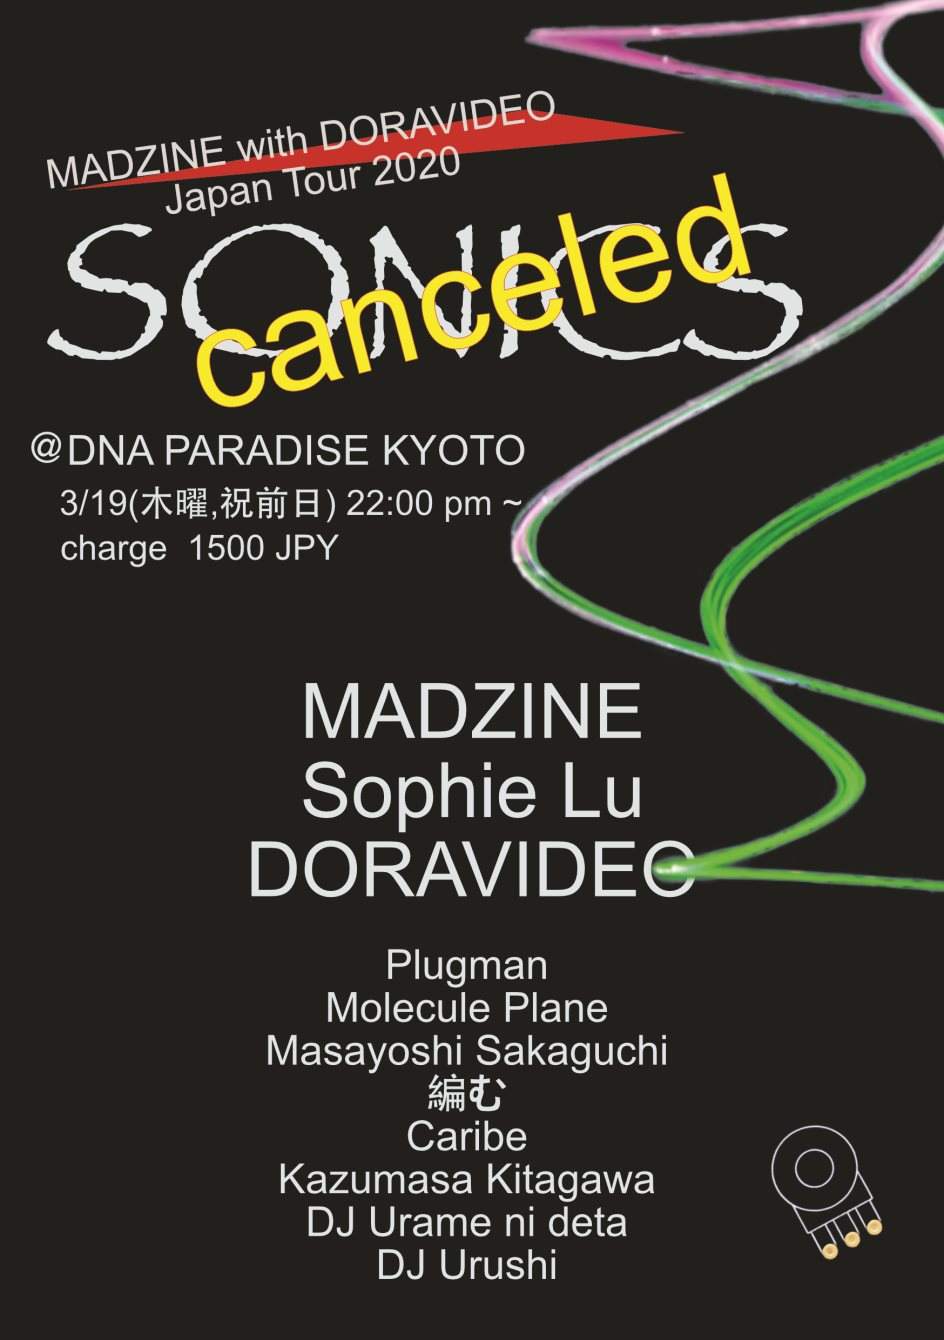 【中止】Sonics Madzine with Doravideo Japan Tour 2020【canceled】 - フライヤー表